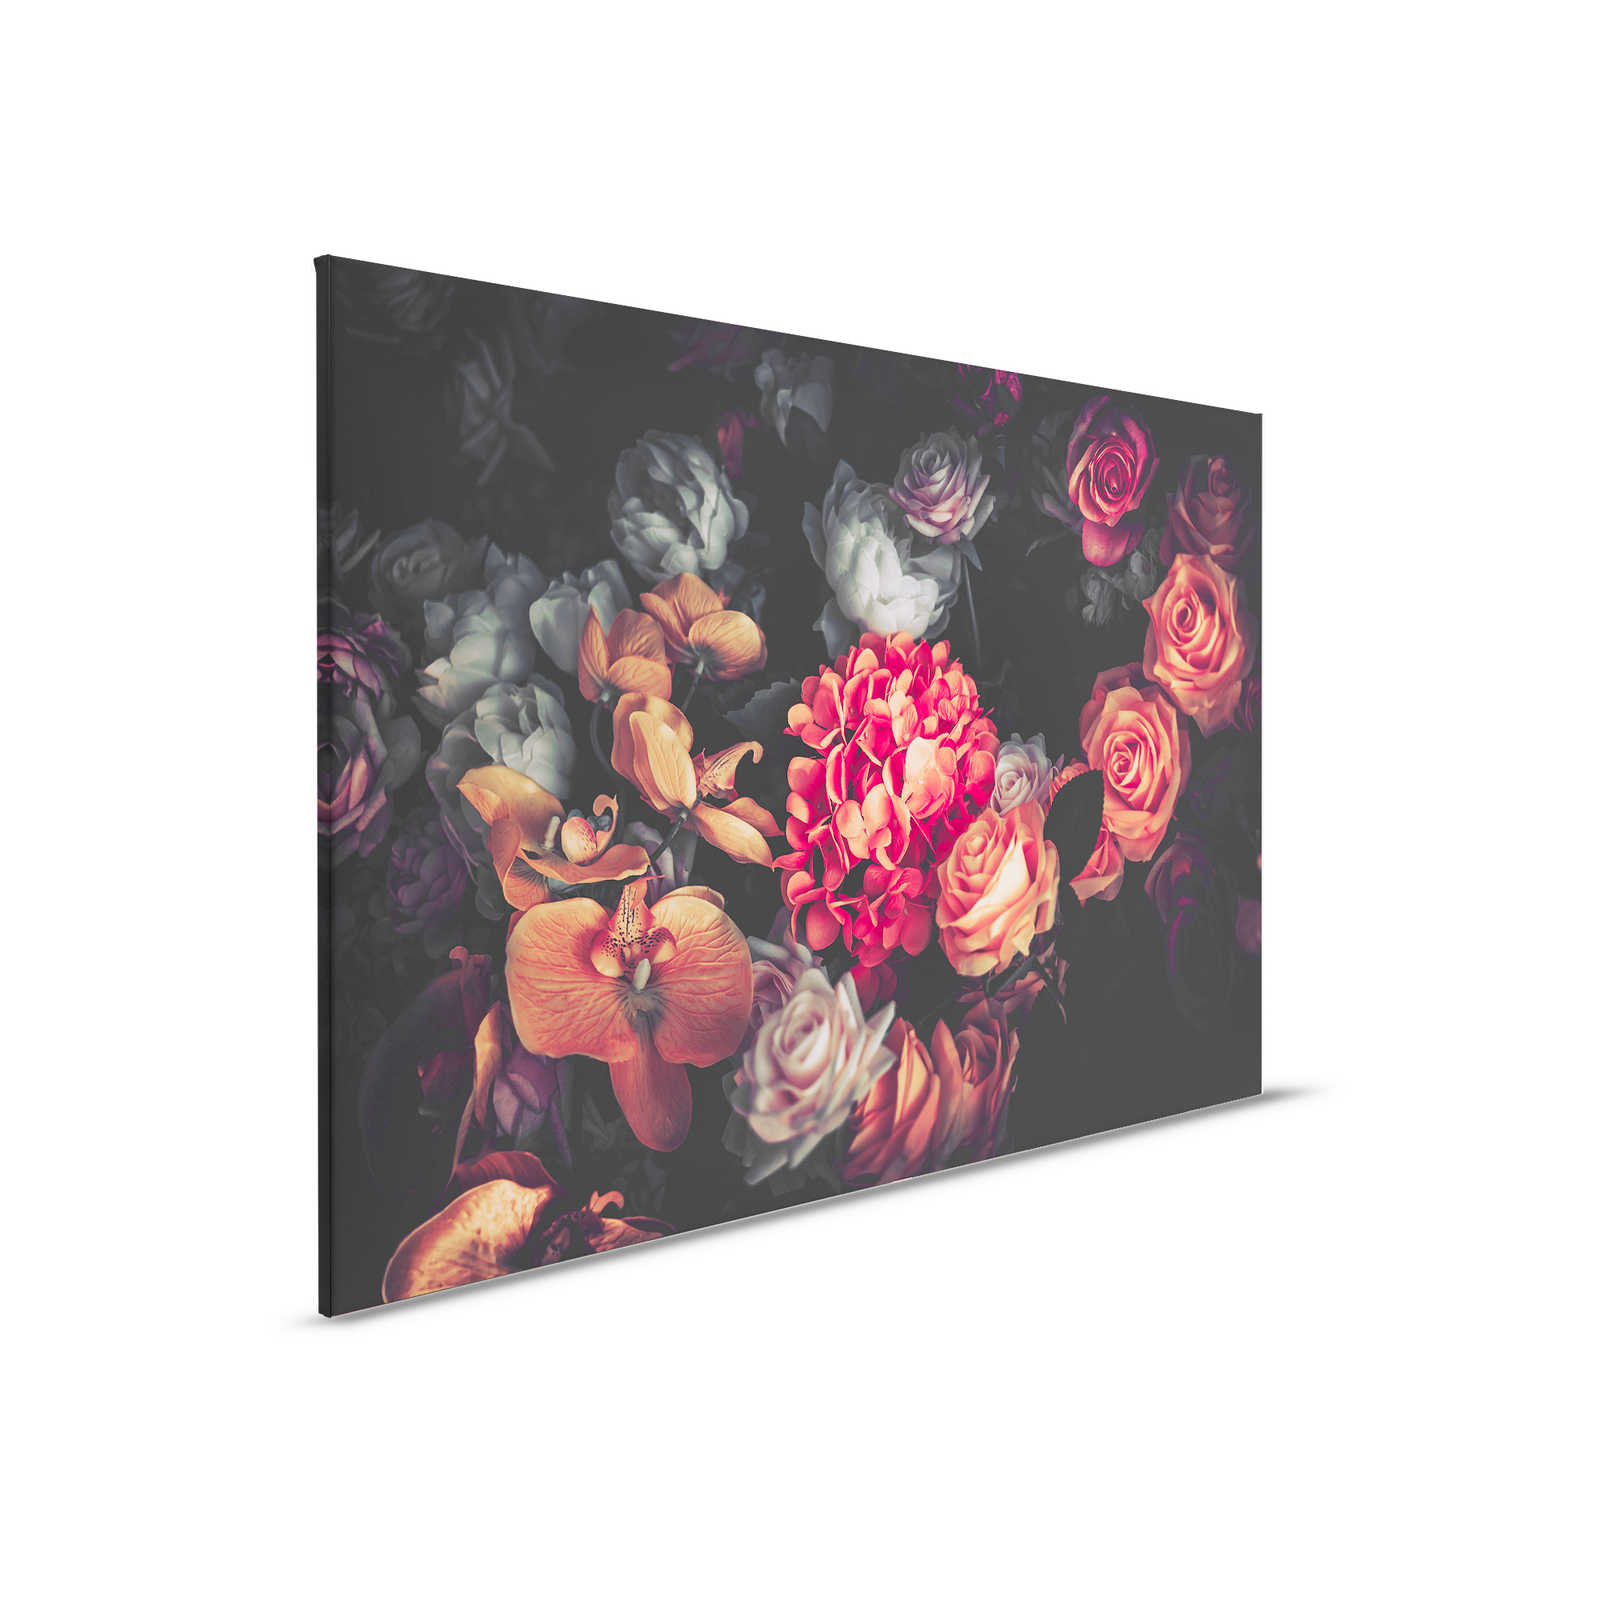 Roses Bouquet Canvas - 0.90 m x 0.60 m
